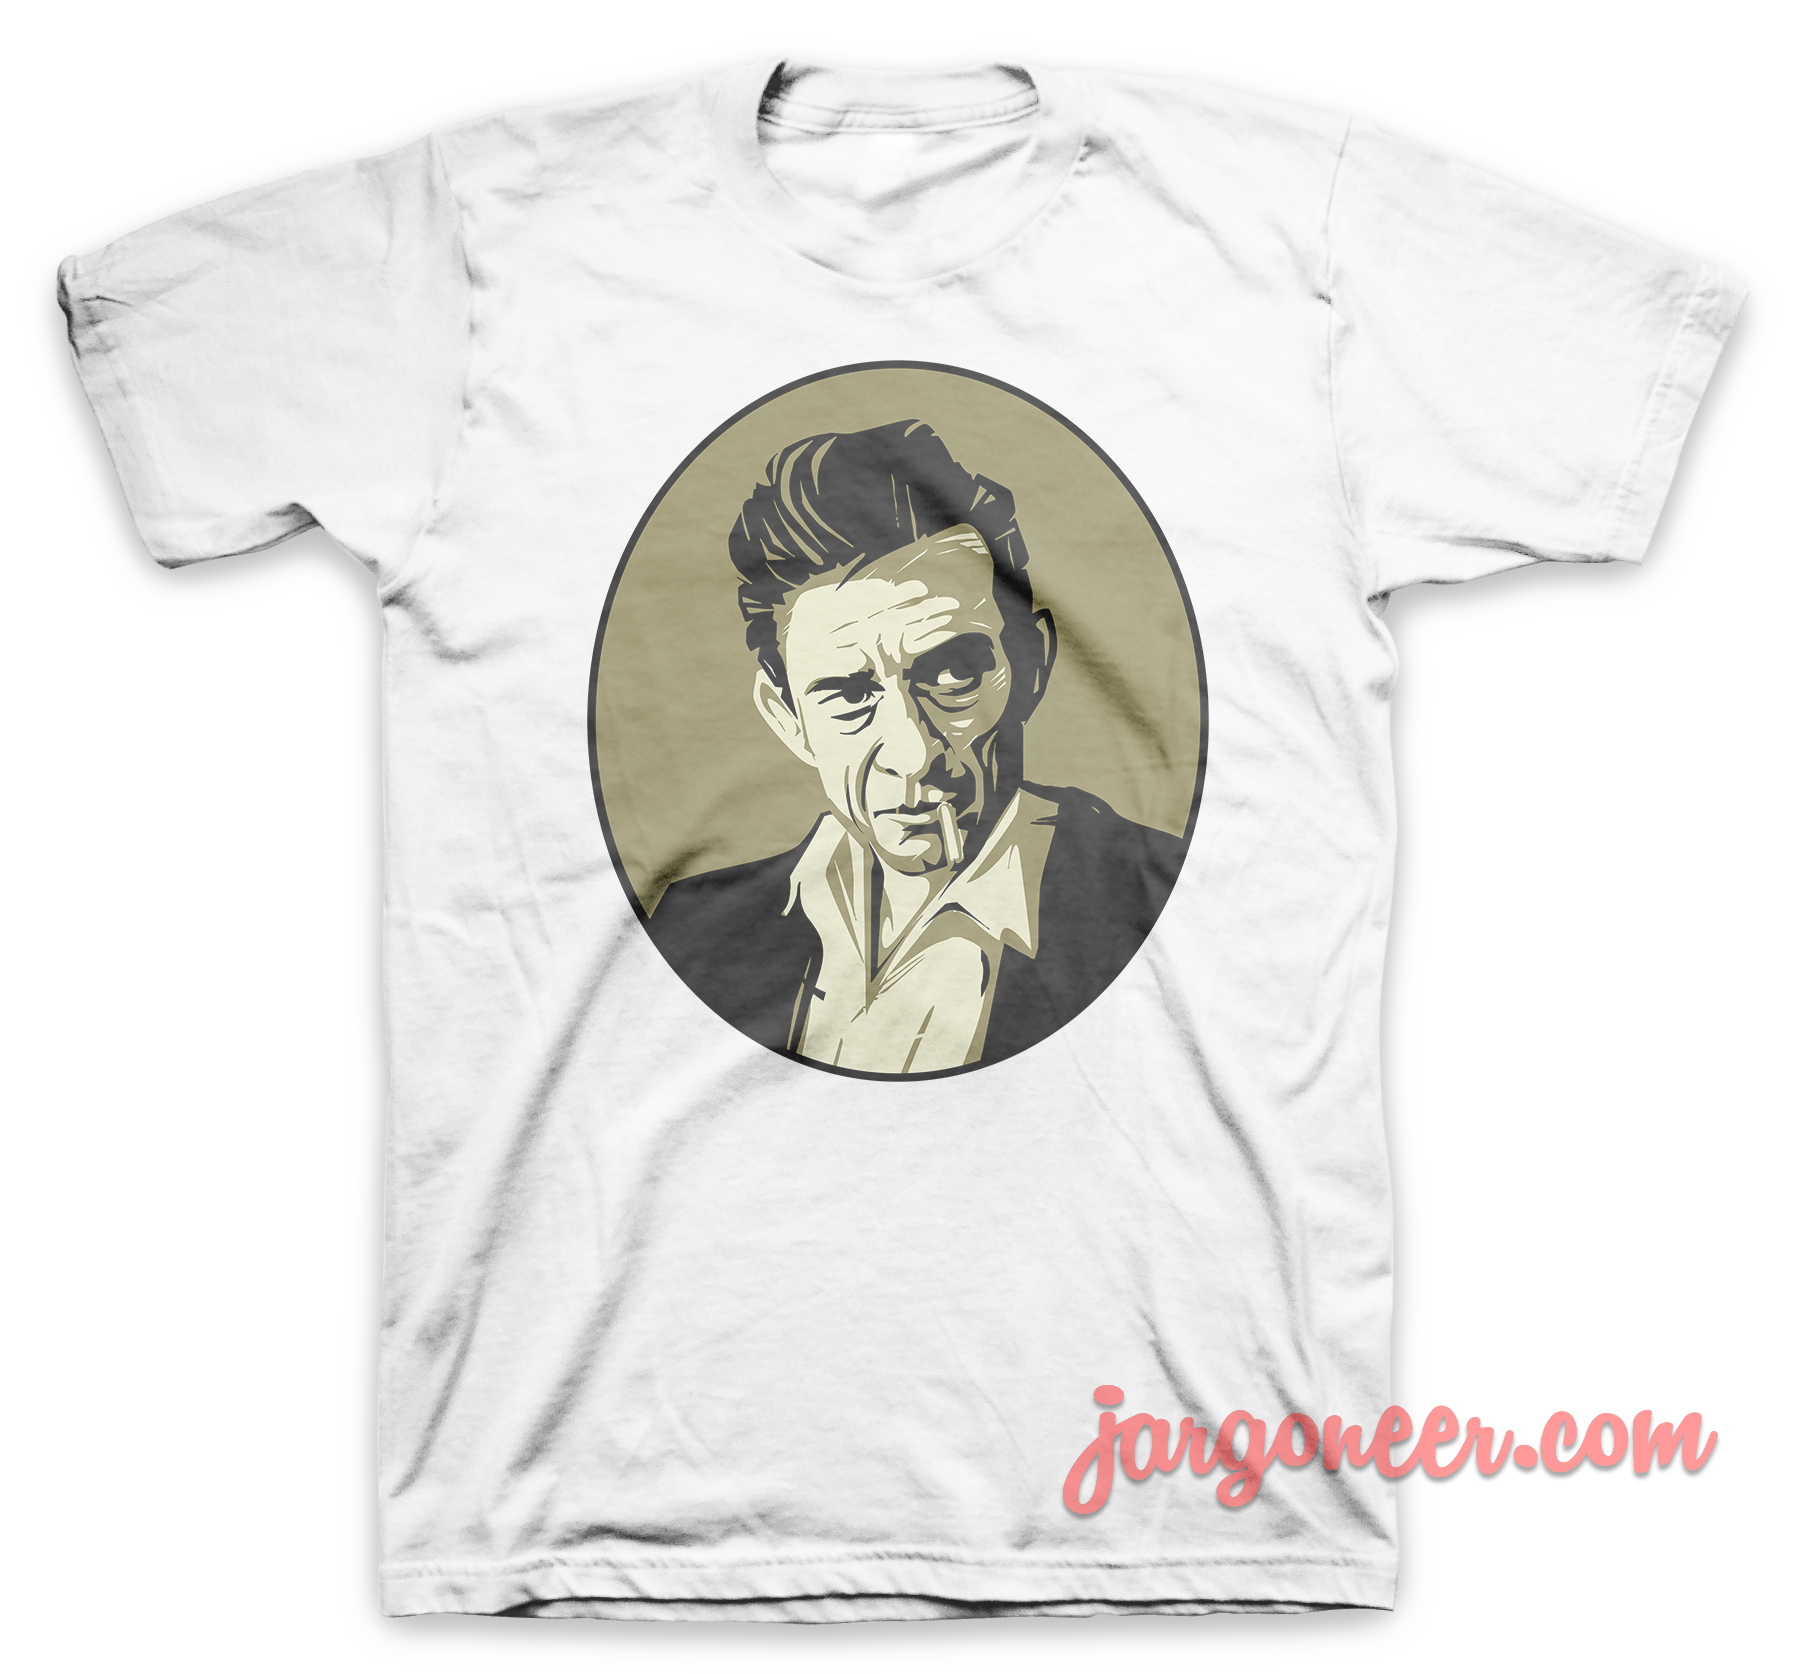 Johnny Cash White T Shirt - Shop Unique Graphic Cool Shirt Designs